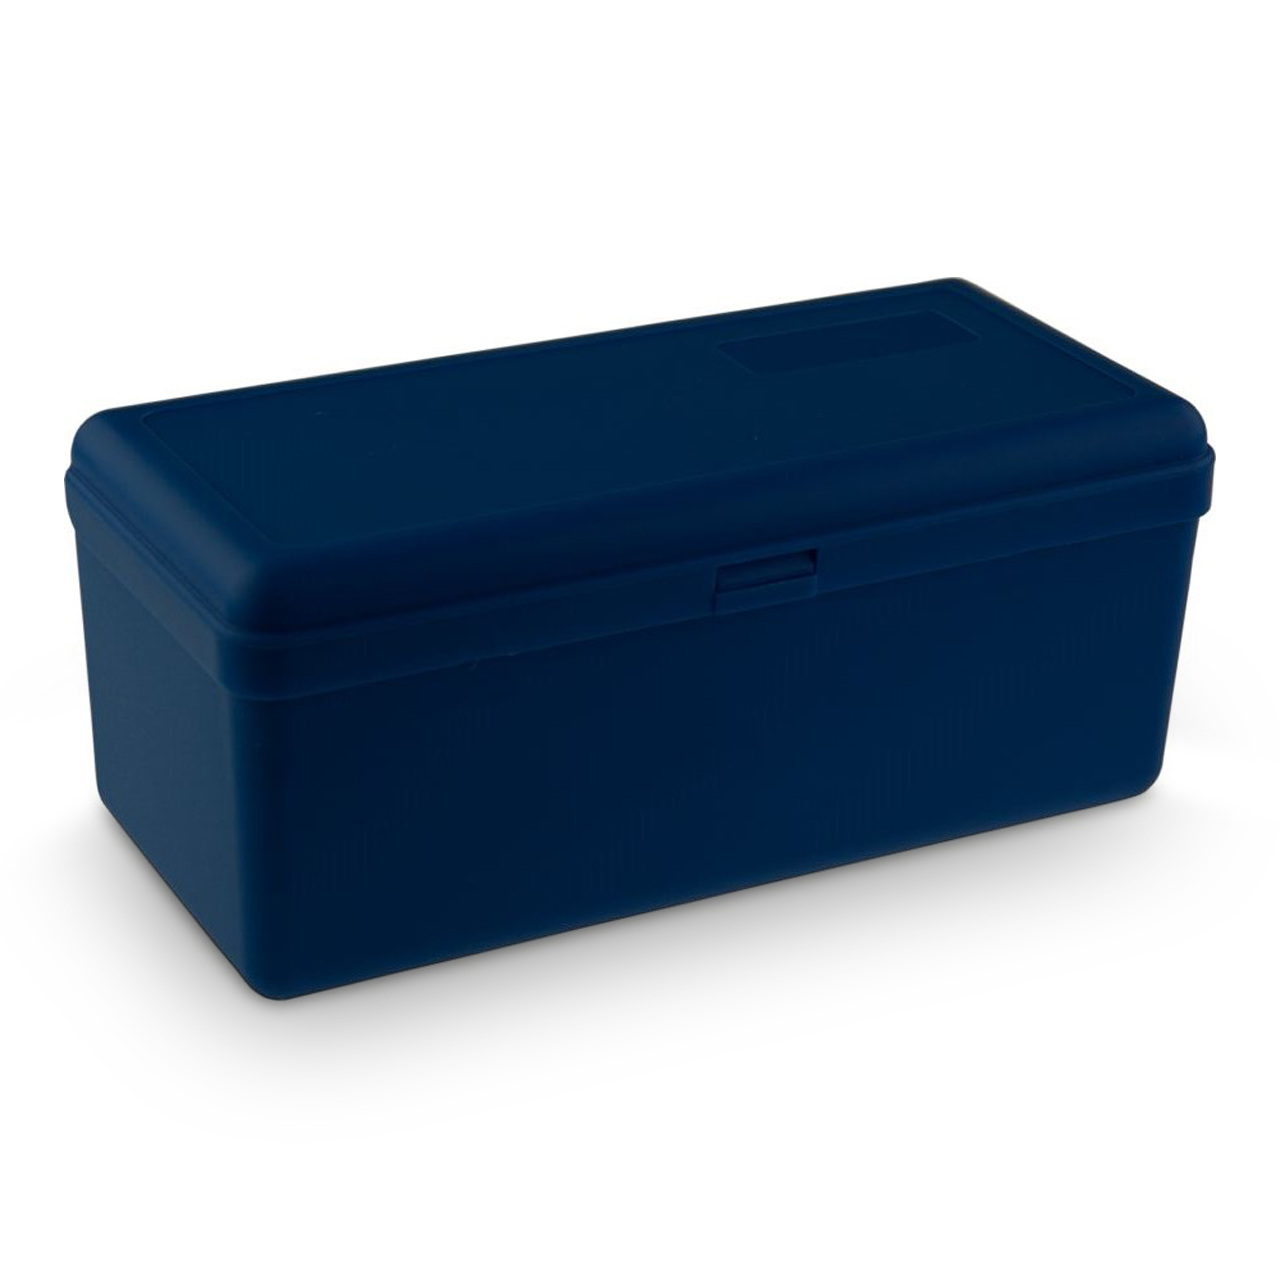 ARTILUX Artibox Brillenbox blue